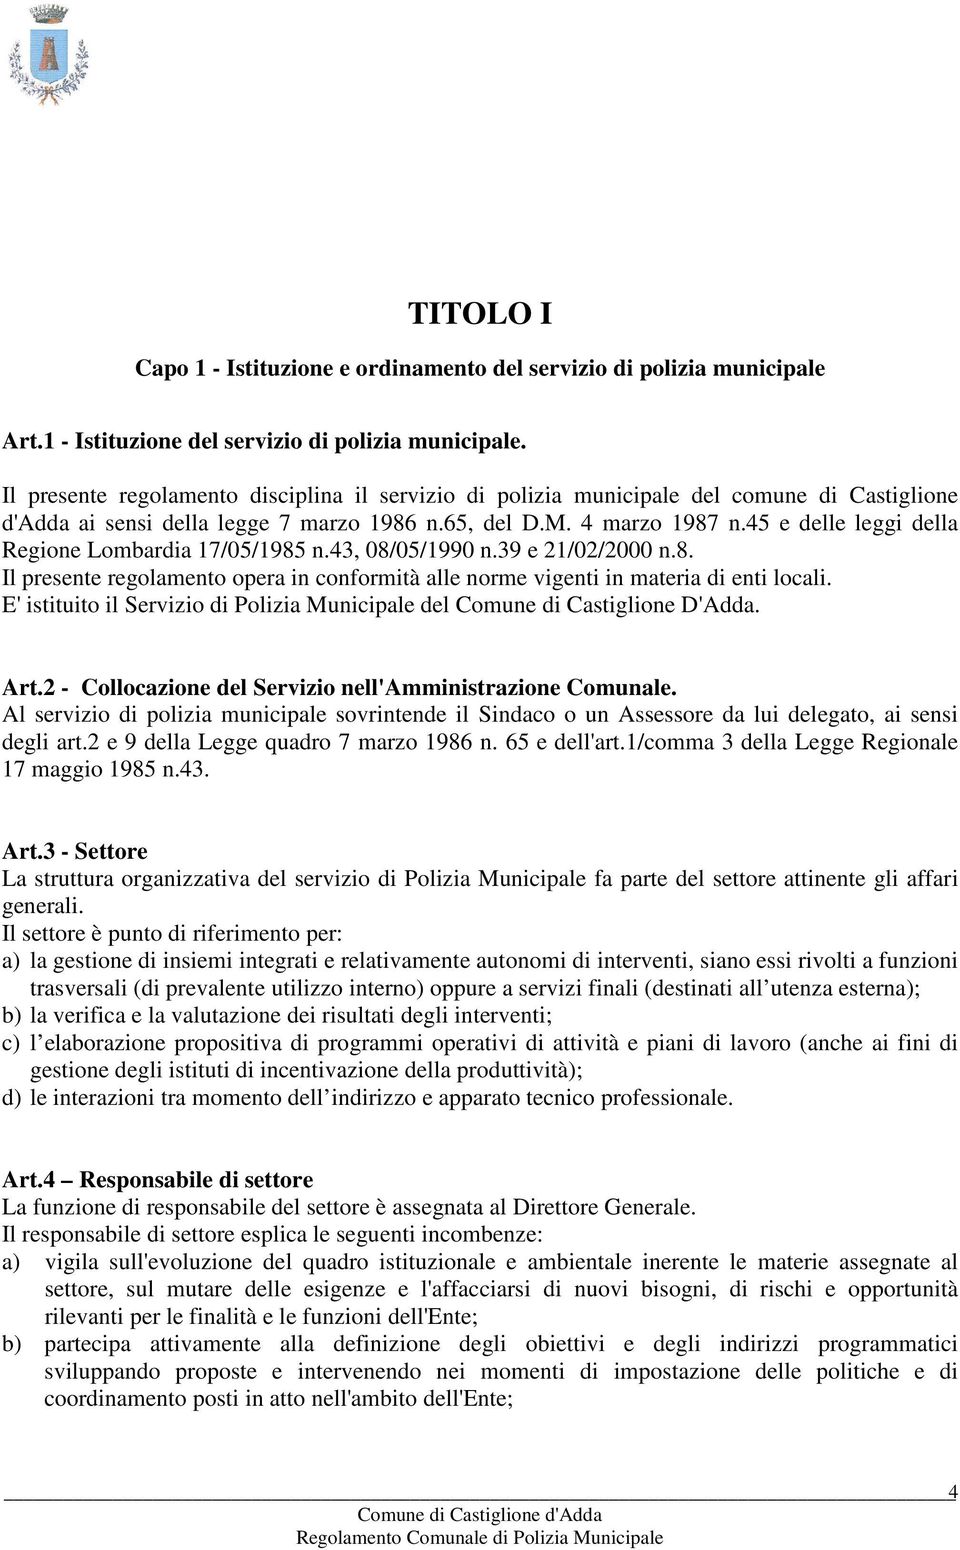 45 e delle leggi della Regione Lombardia 17/05/1985 n.43, 08/05/1990 n.39 e 21/02/2000 n.8. Il presente regolamento opera in conformità alle norme vigenti in materia di enti locali.